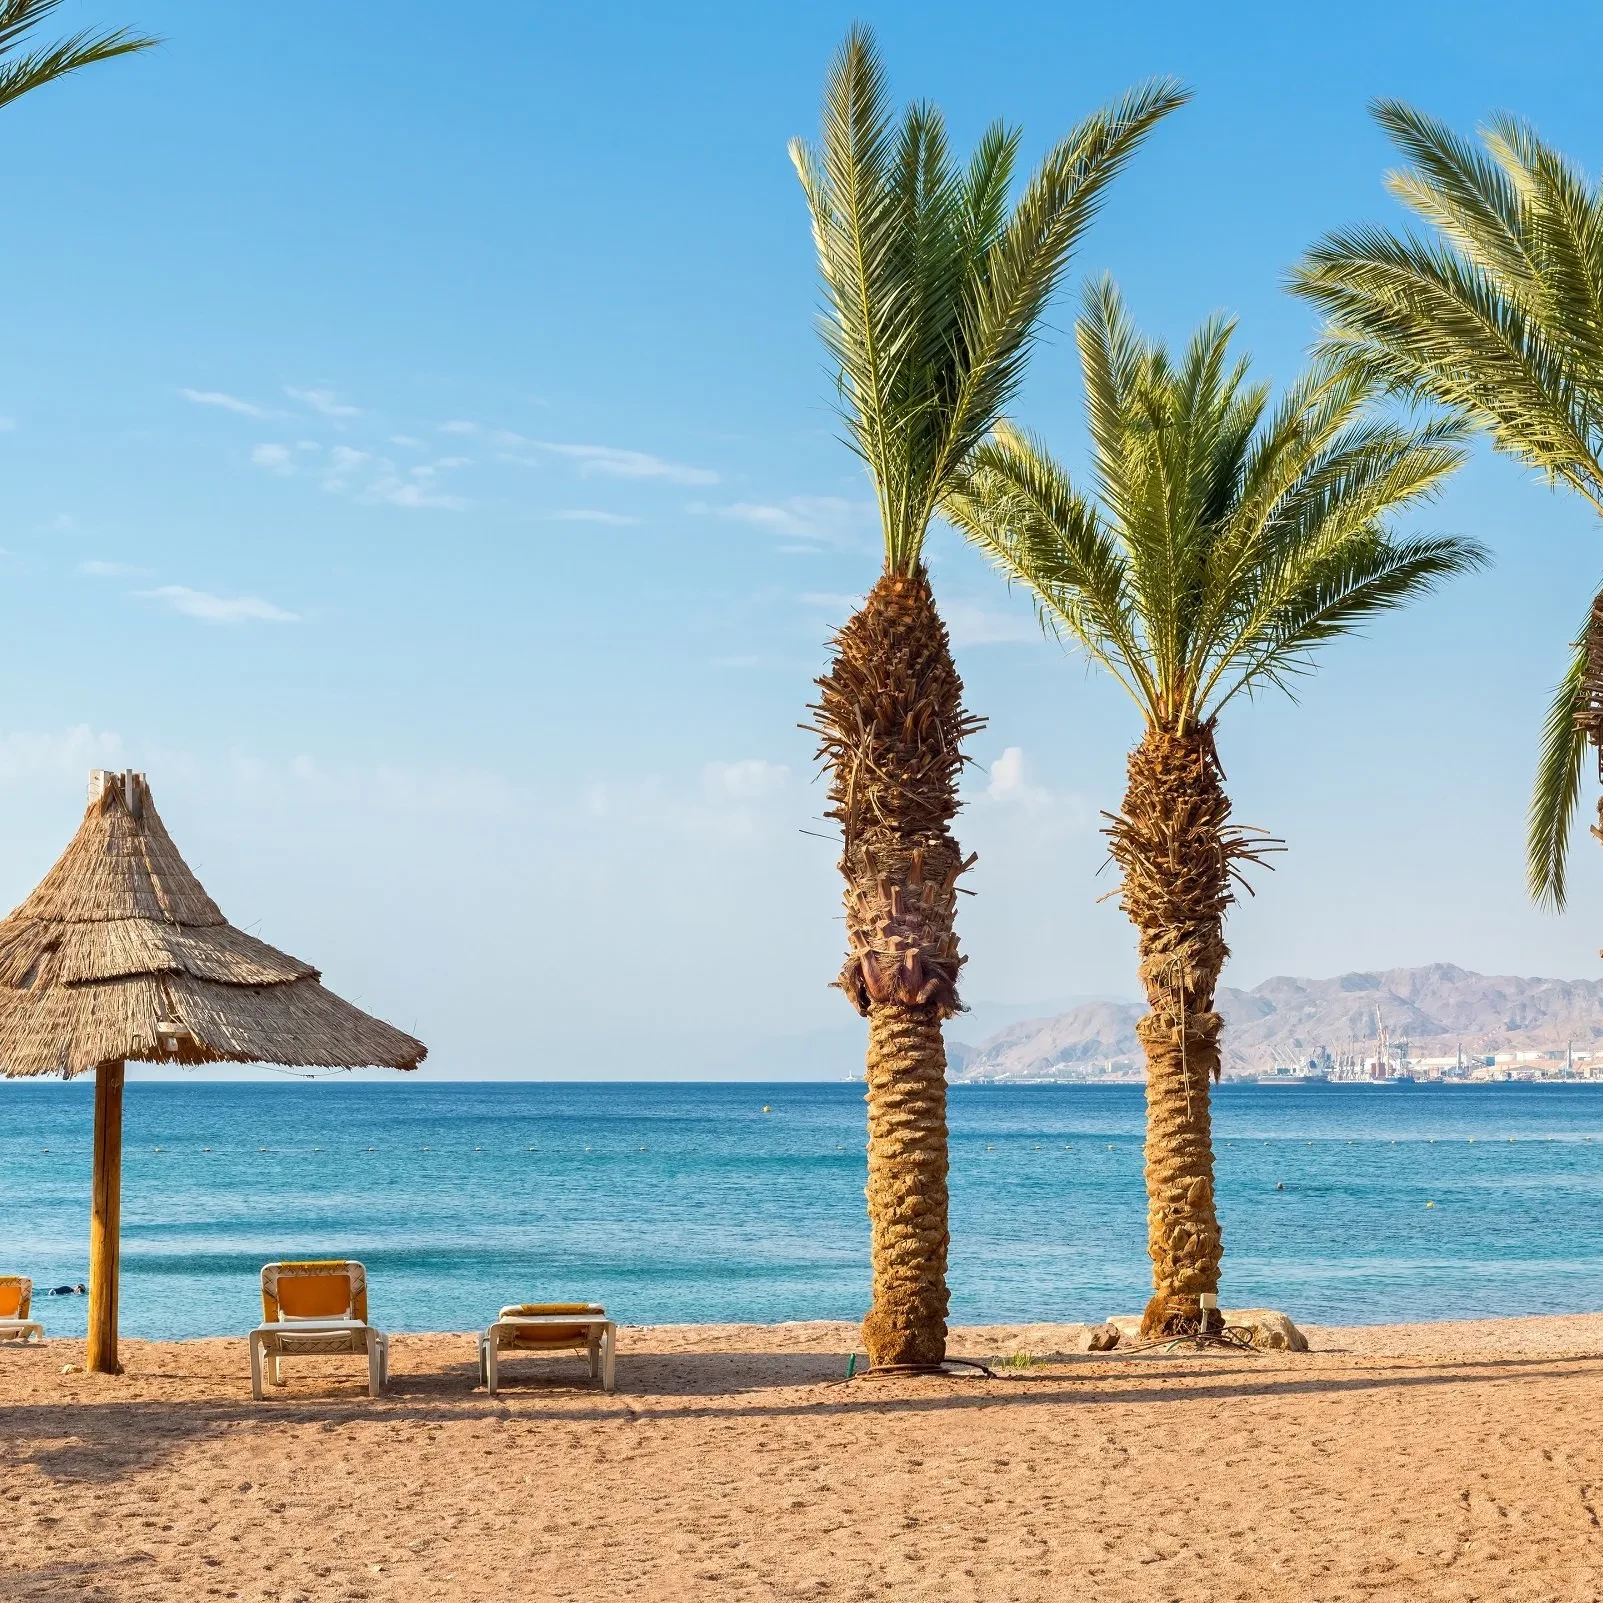 Aqaba beach